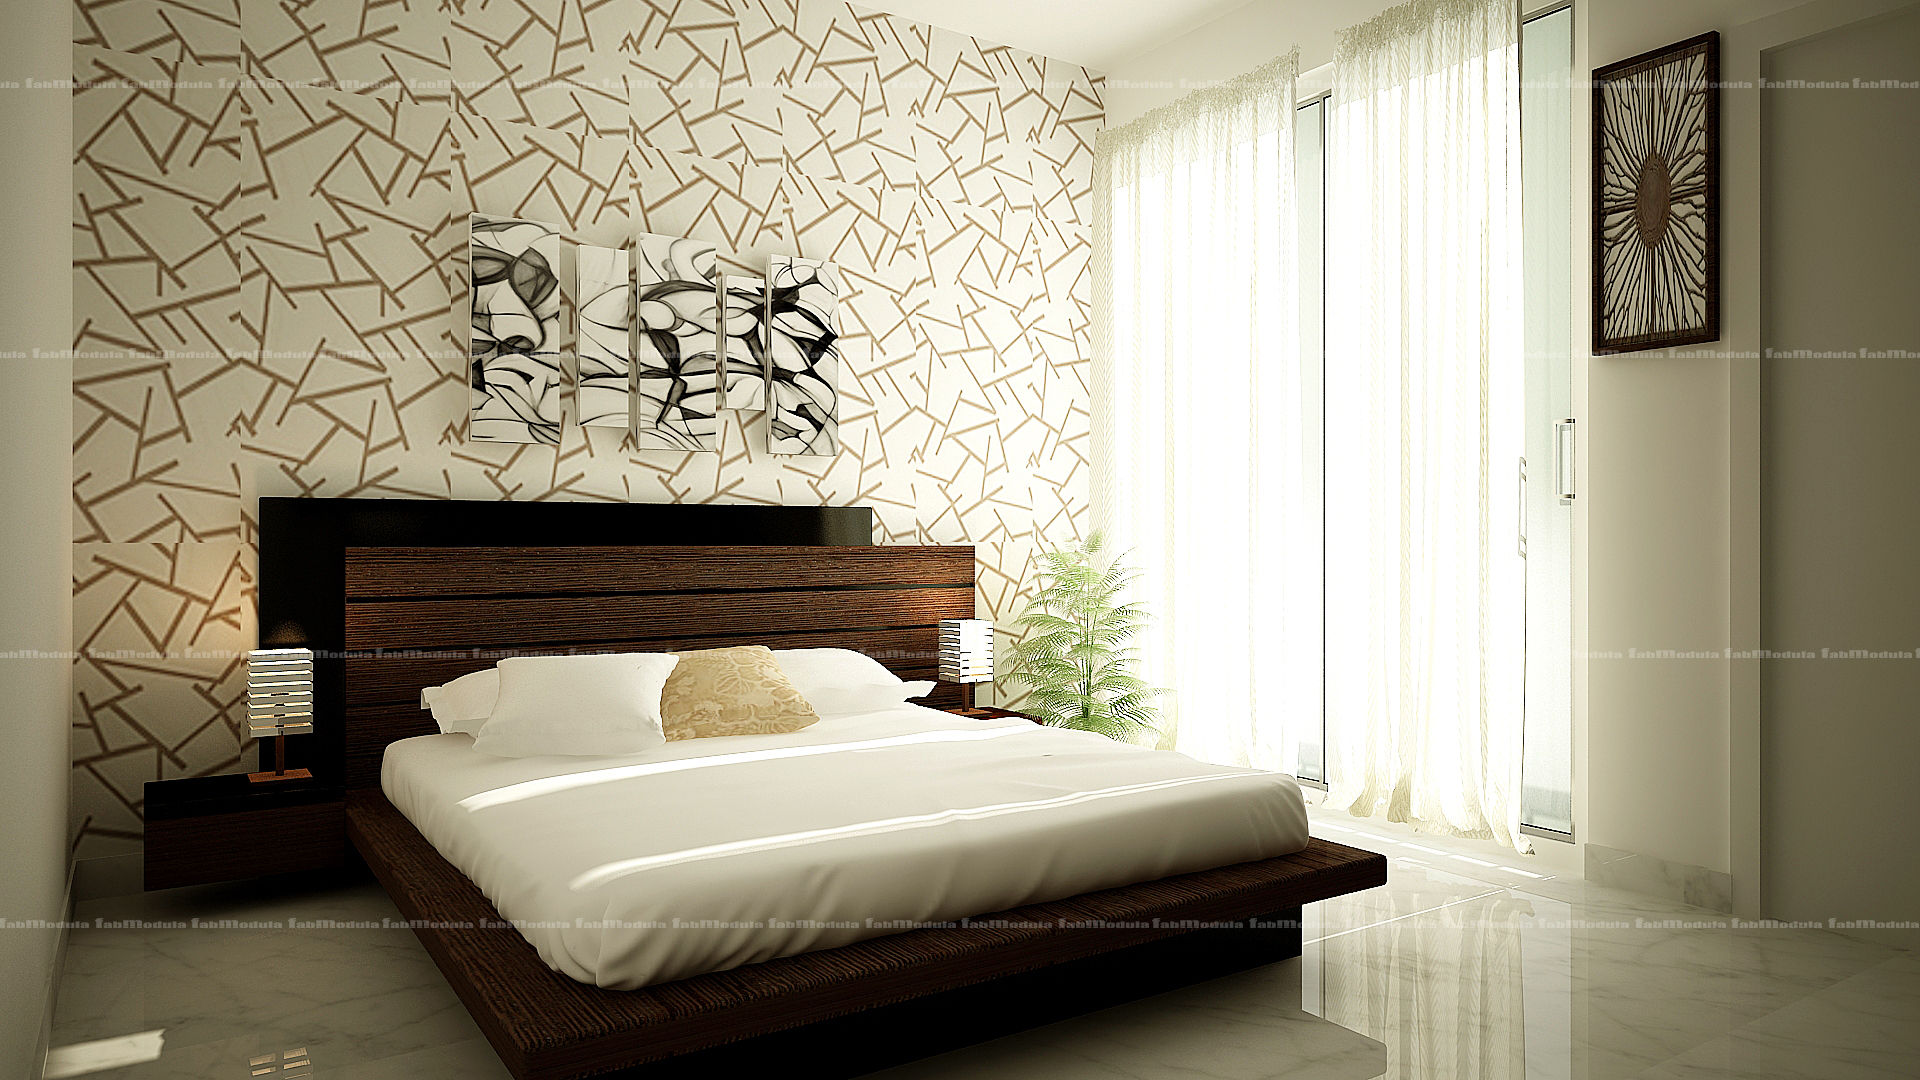 Bedroom designs, Fabmodula Fabmodula 臥室